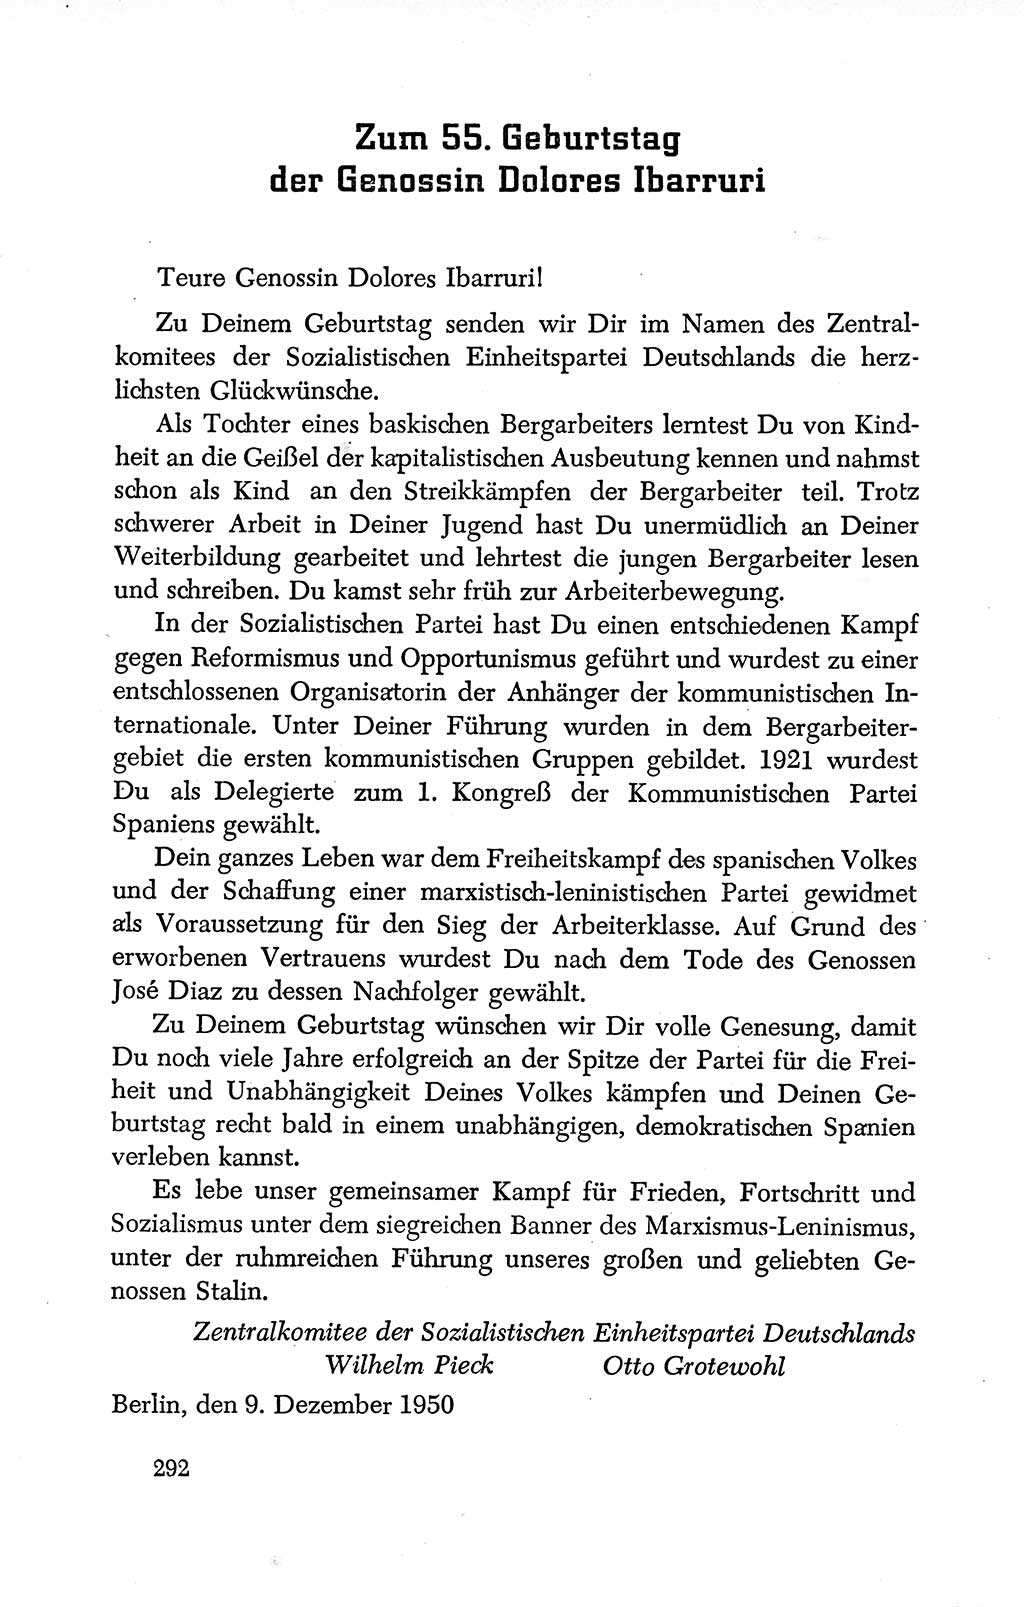 Dokumente der Sozialistischen Einheitspartei Deutschlands (SED) [Deutsche Demokratische Republik (DDR)] 1950-1952, Seite 292 (Dok. SED DDR 1950-1952, S. 292)